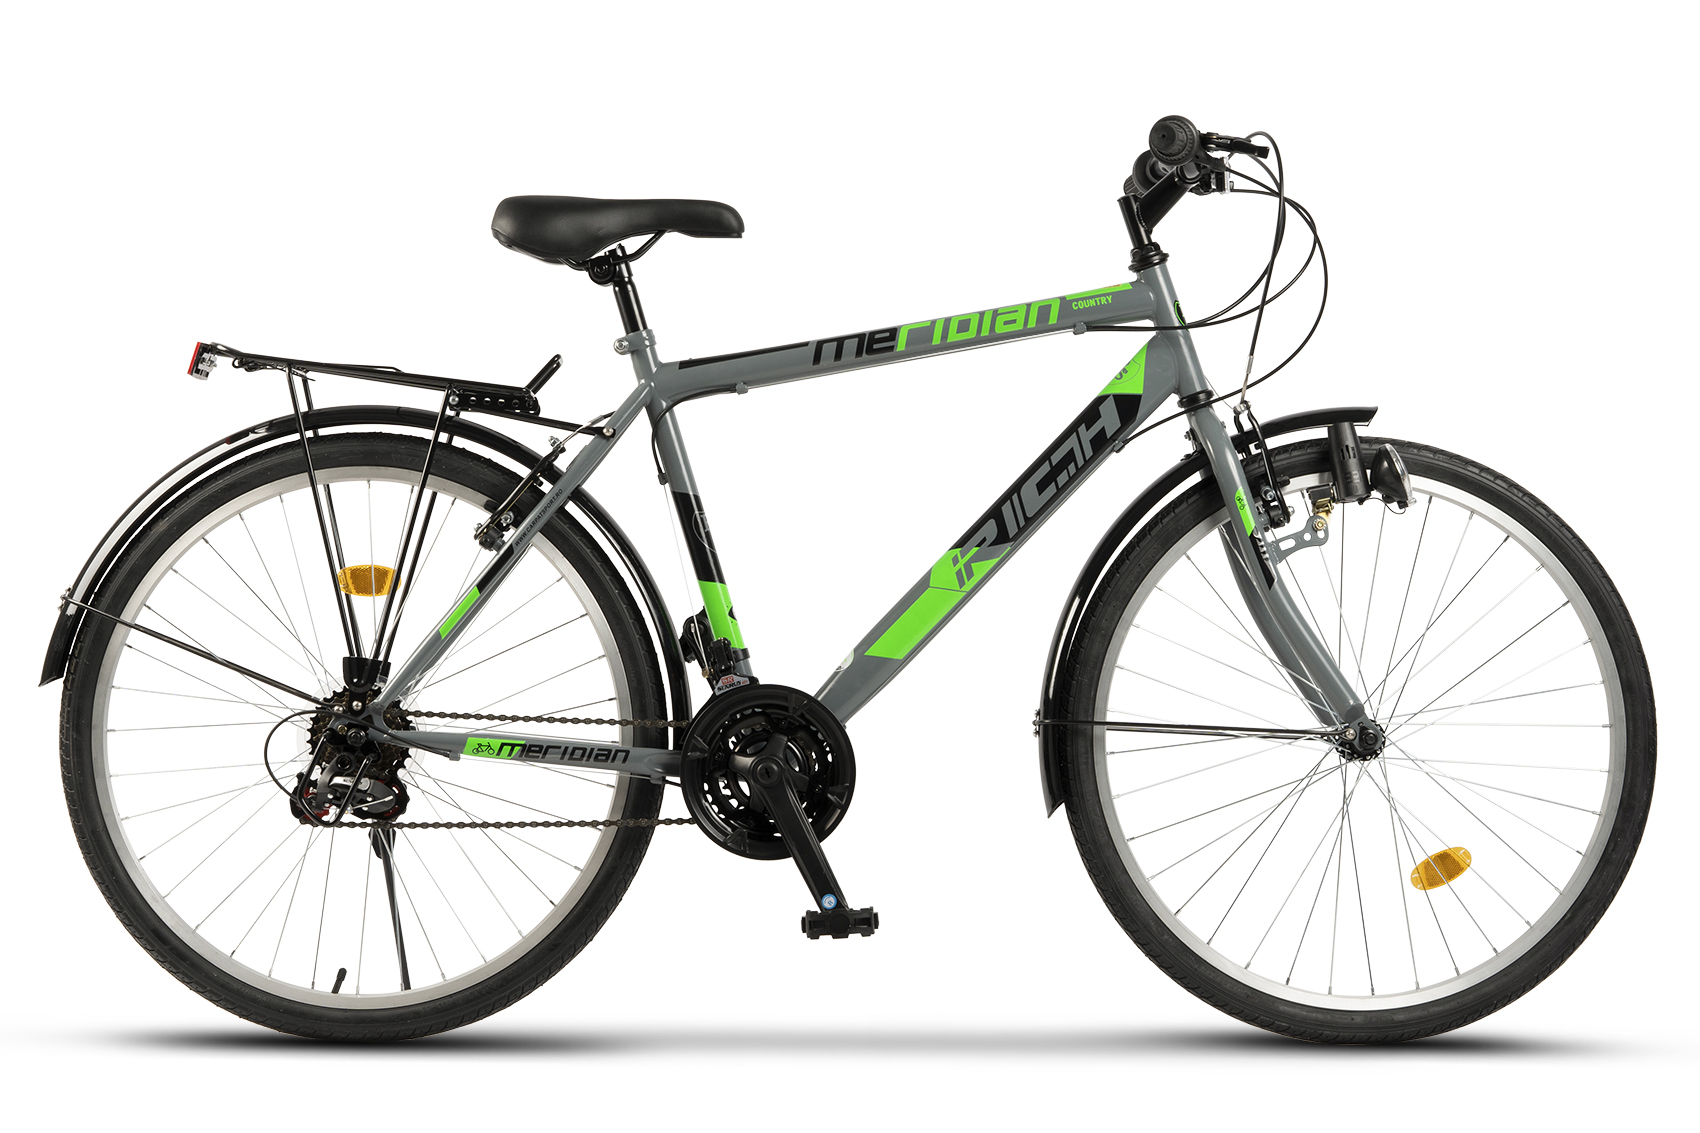 BICICLETE DE ORAS - Bicicleta City Rich Meridian R2635A 26", Gri/Verde, https:carpatsport.ro